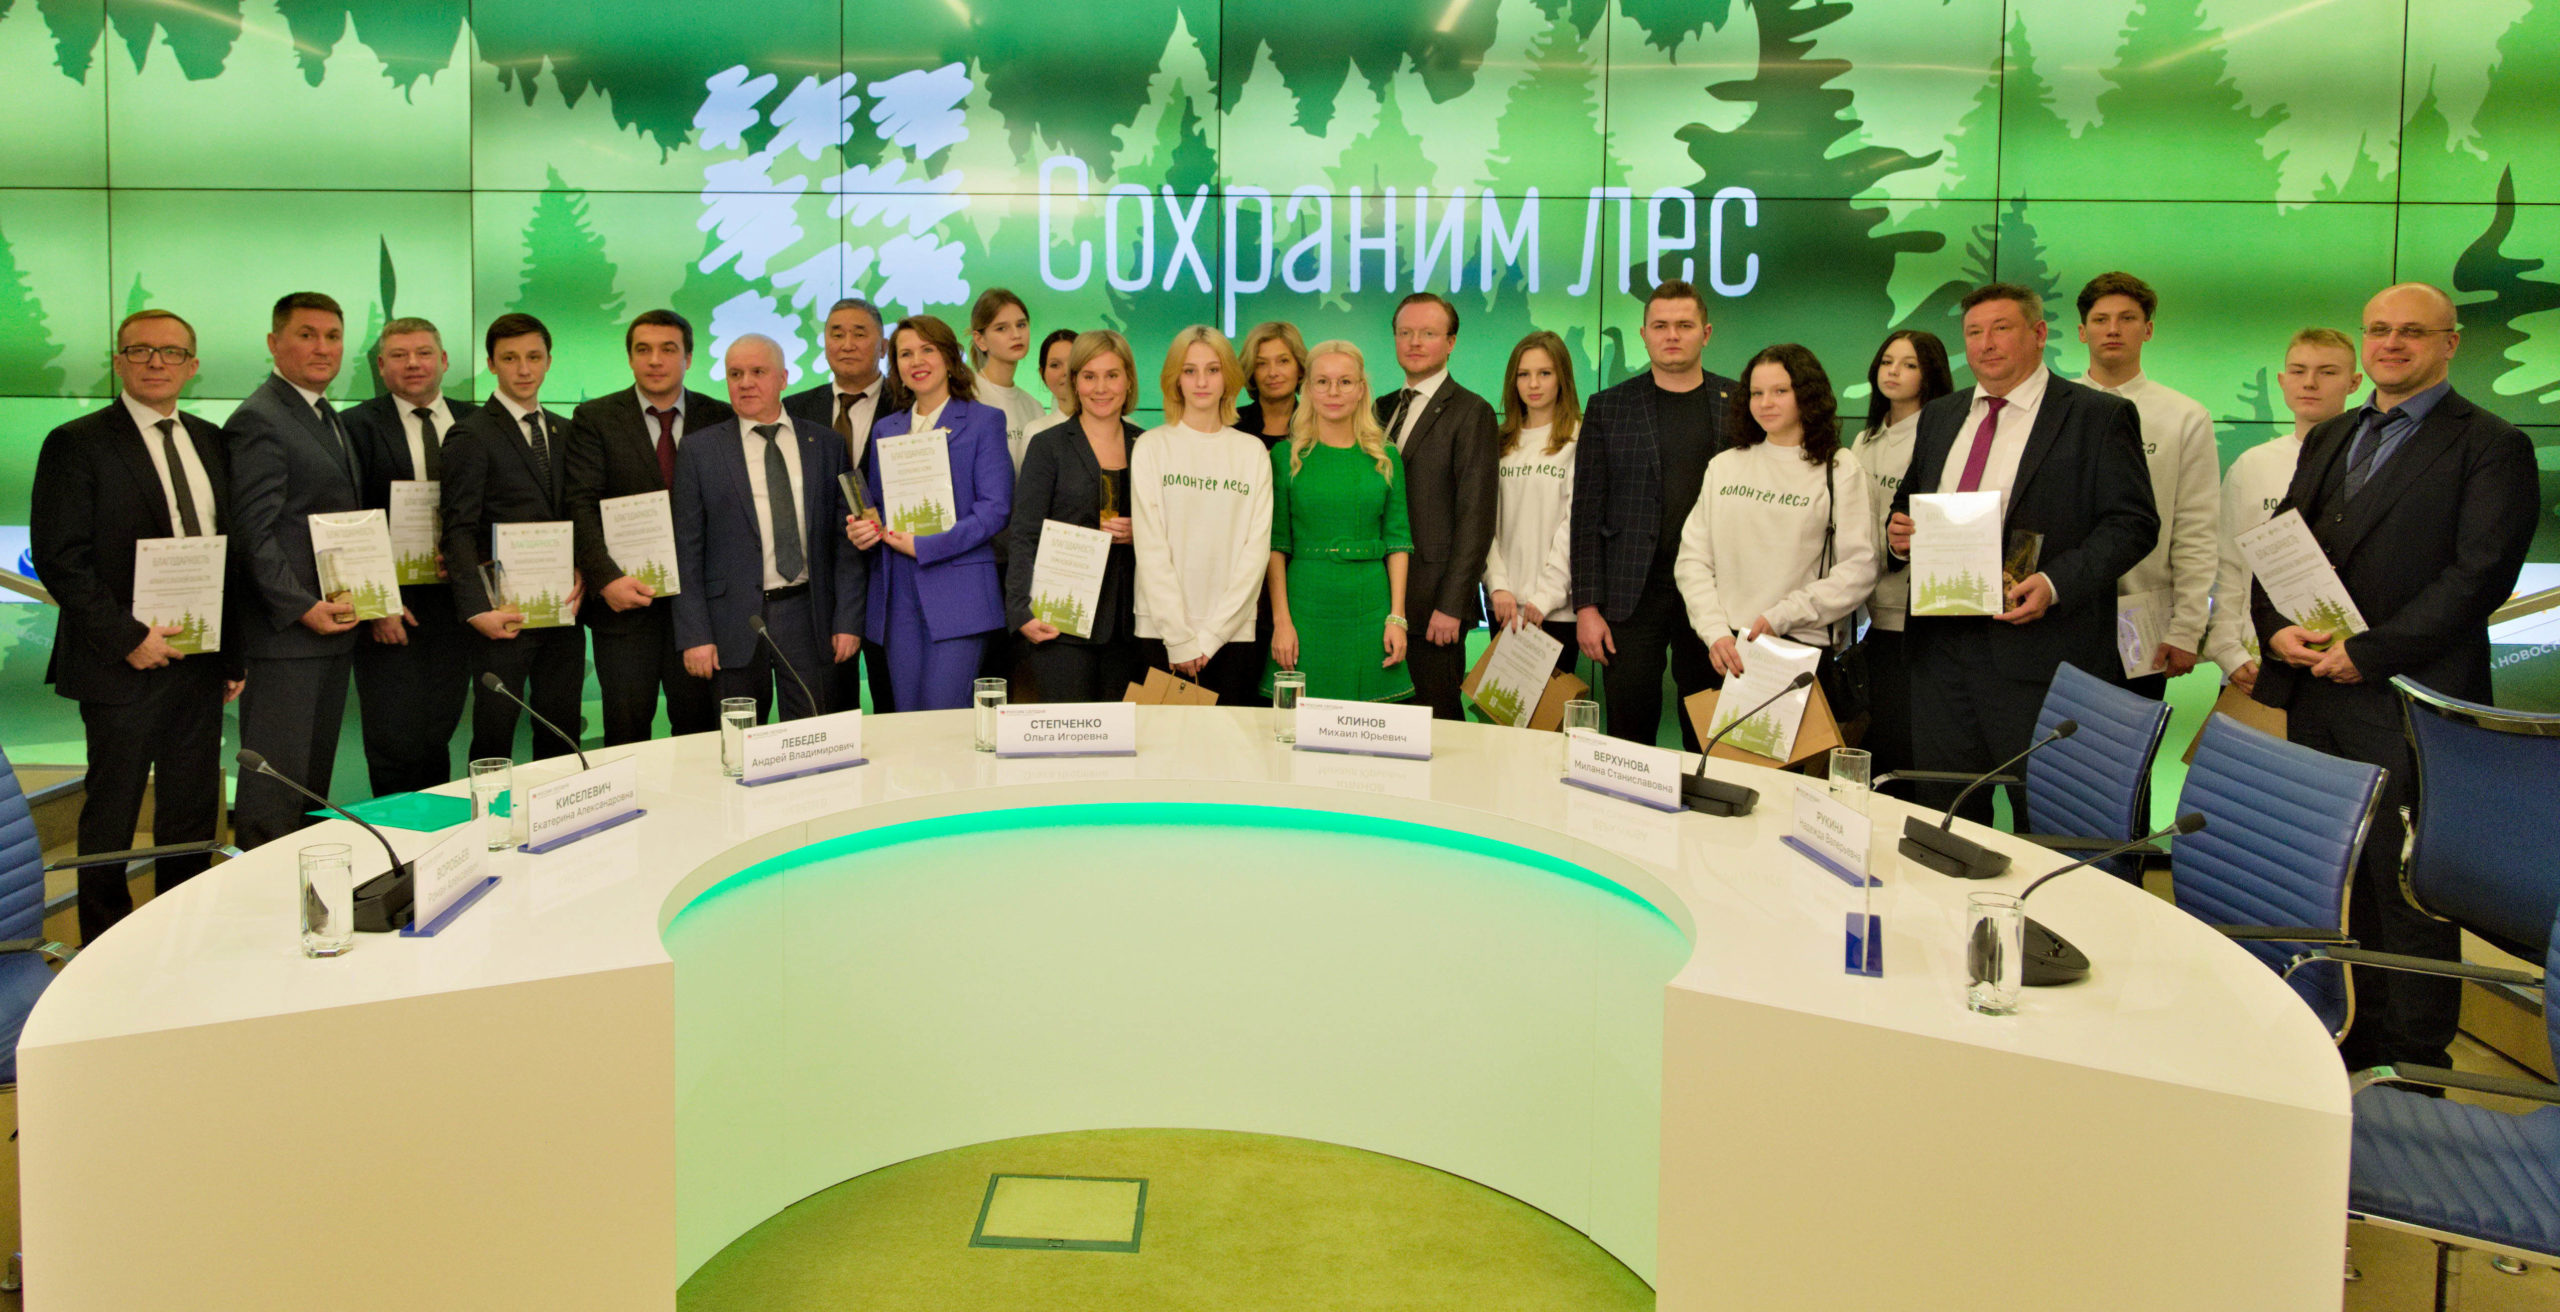 Глеб Никитин: «Нижегородская область заняла второе место по итогам Всероссийской акции «Сохраним лес»